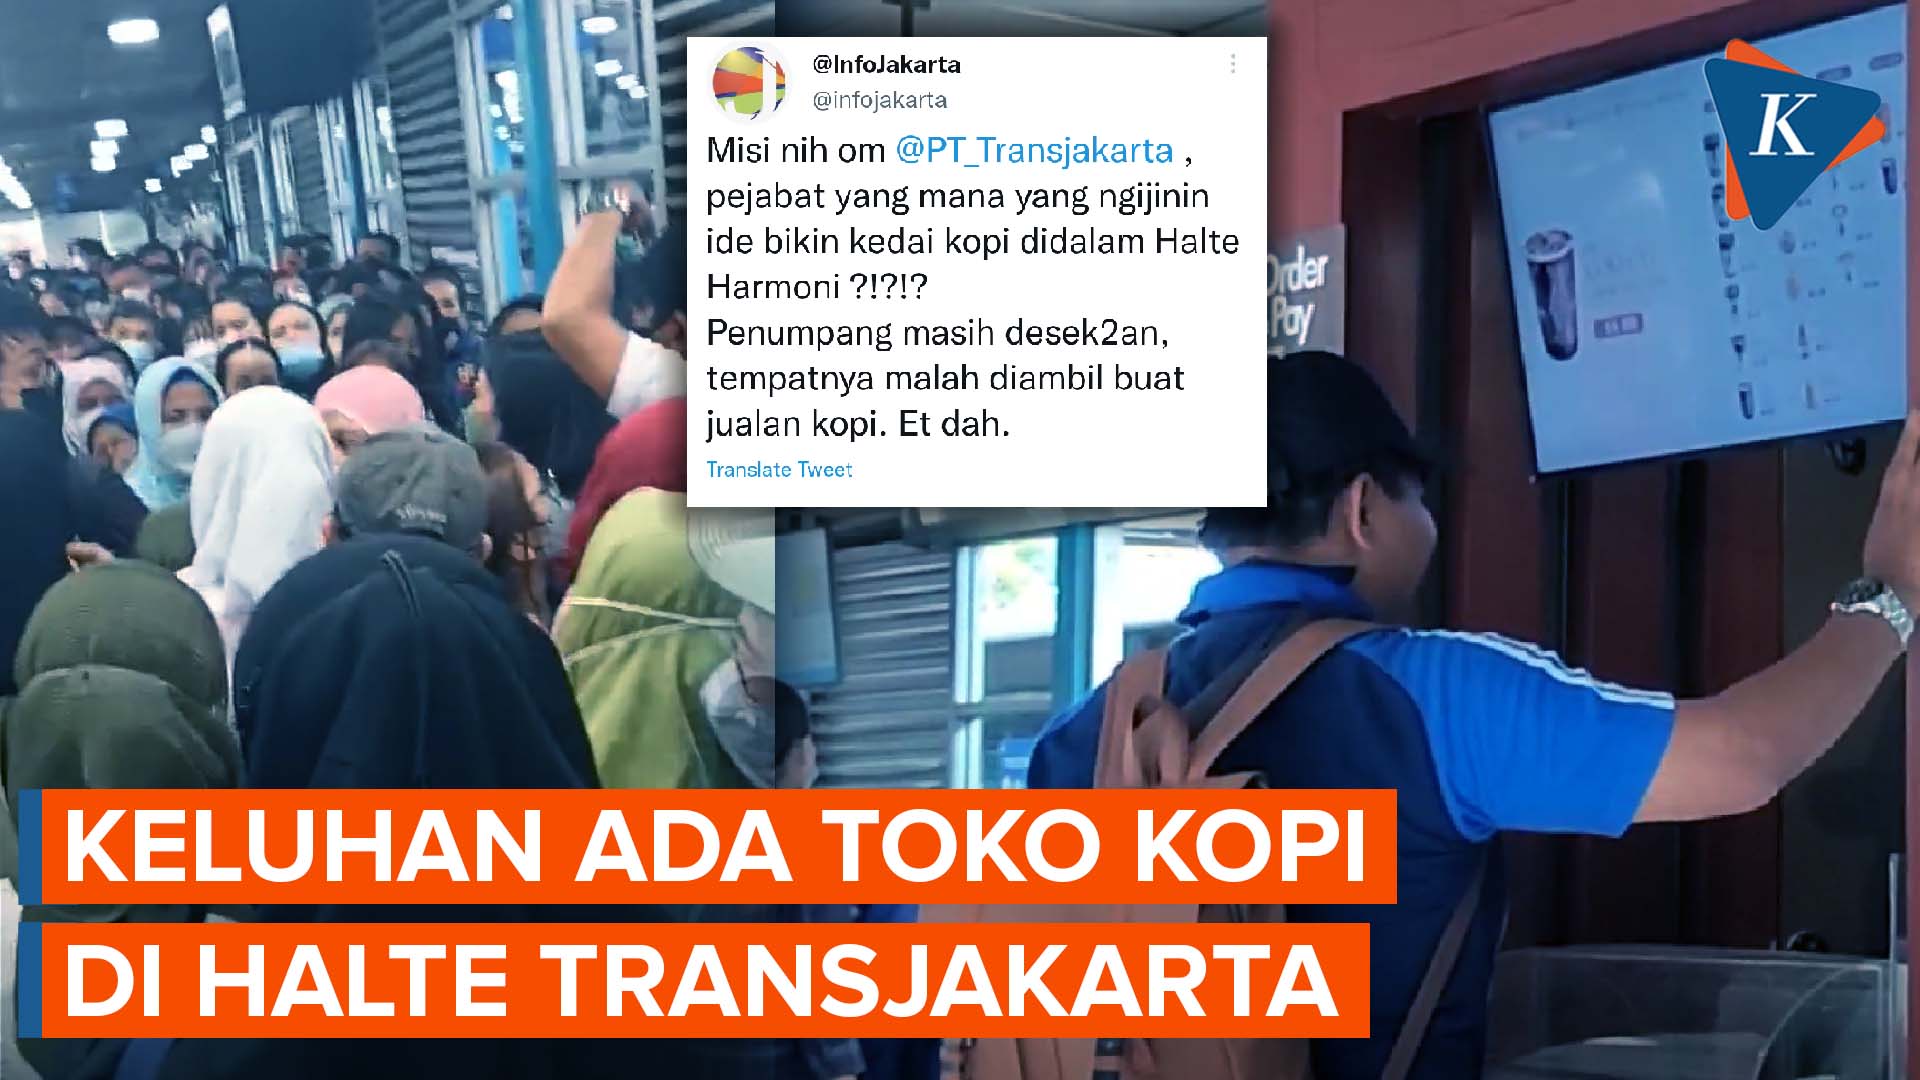 Viral Video Kritik Ada Toko Kopi di Halte Harmoni, Ini Tanggapan Transjakarta